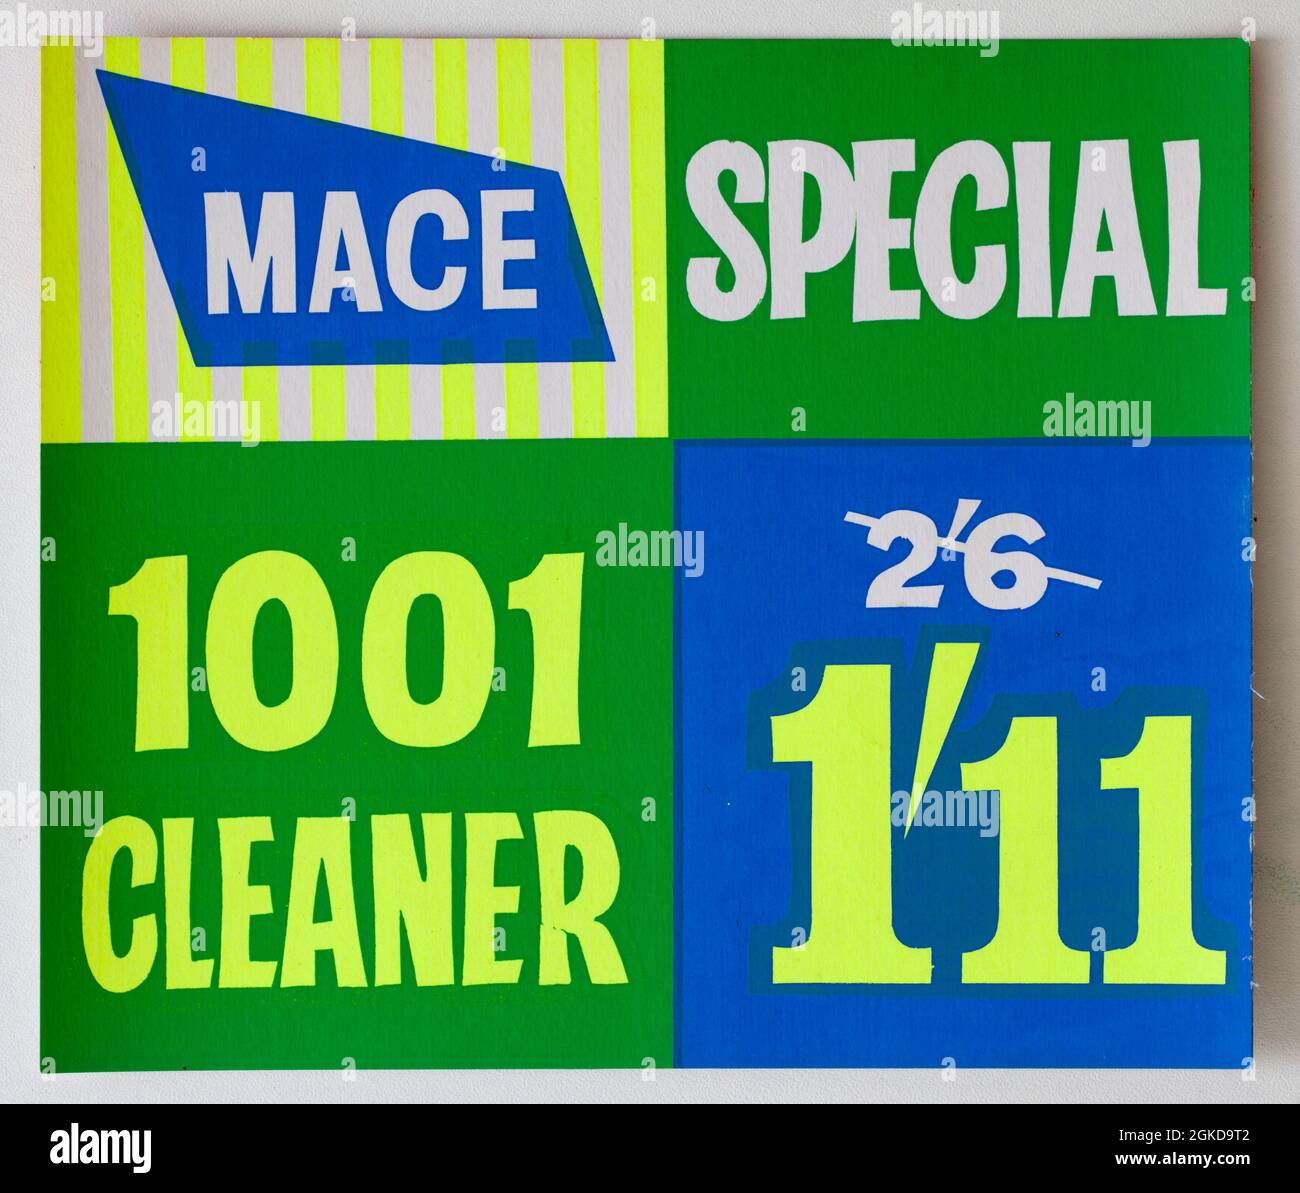 Vintage années 1960 Mace Shop Prix carte d'affichage - 1001 Cleaner Banque D'Images